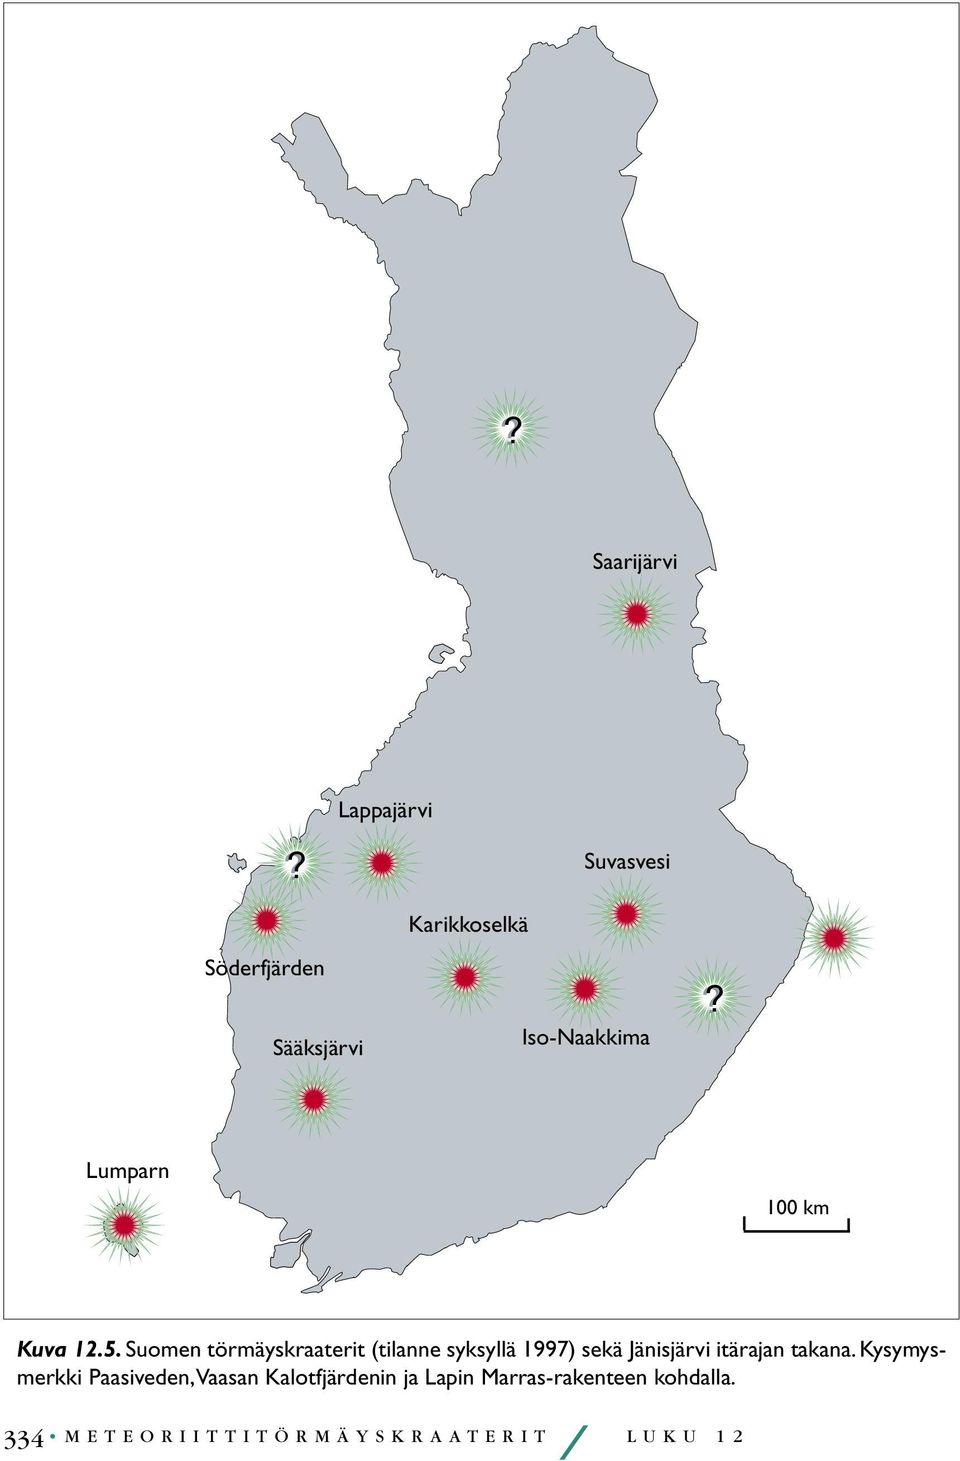 Suomen törmäyskraaterit (tilanne syksyllä 1997) sekä Jänisjärvi itärajan takana.